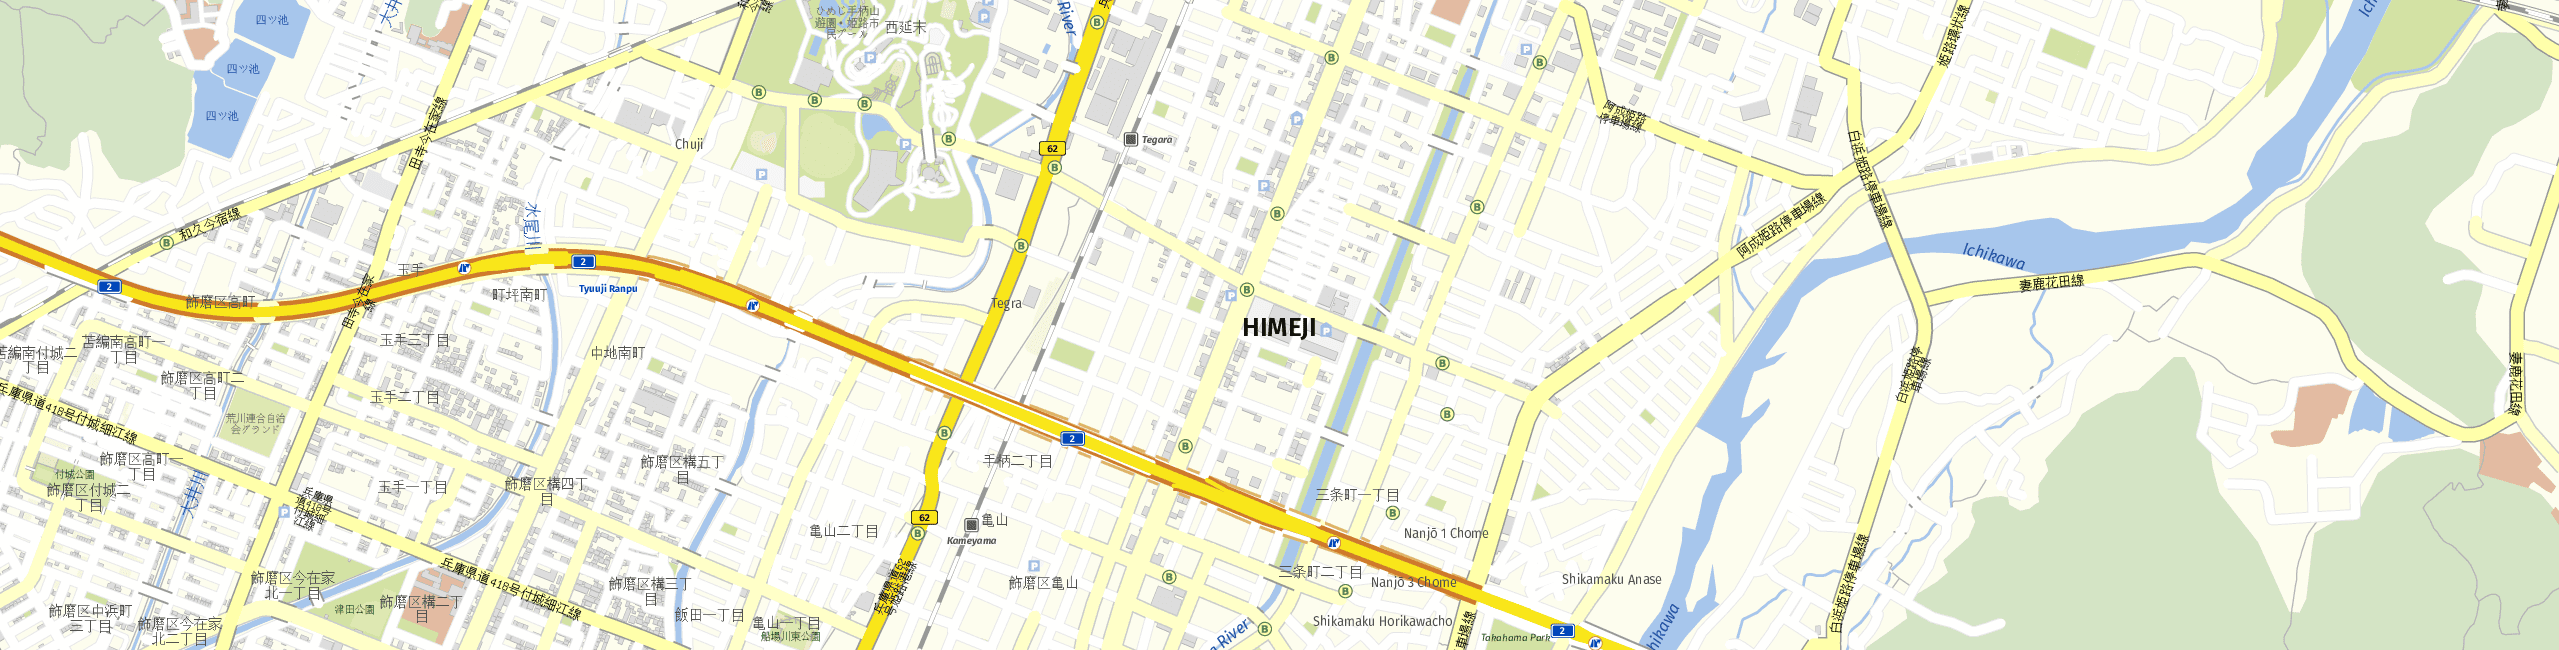 Stadtplan Himeji zum Downloaden.